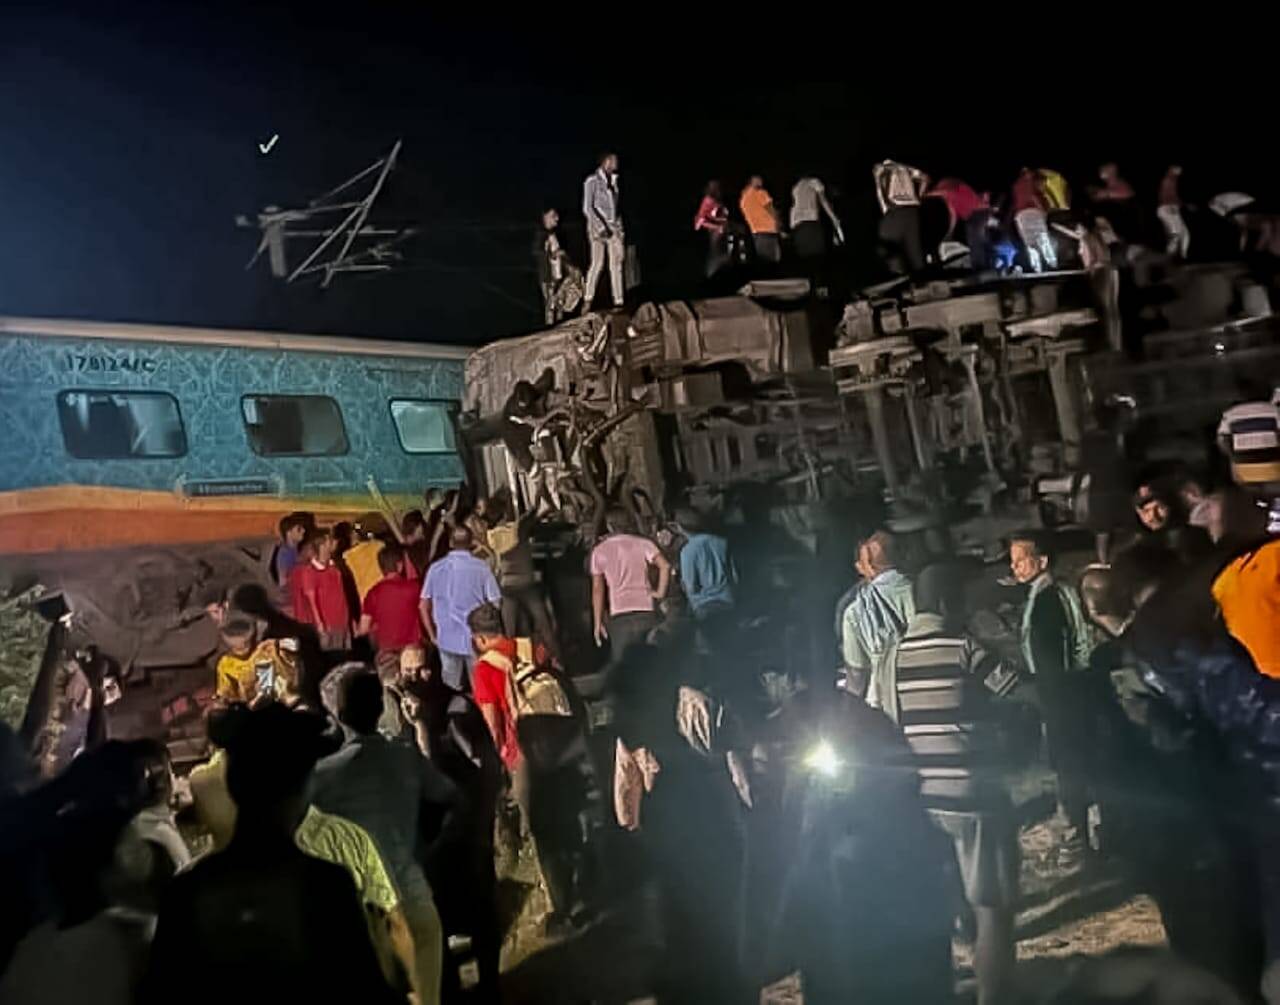 दुर्घटनास्थळावरील व्हिज्युअल्समध्ये मोडलेले ट्रेनचे डबे, एकावर एक पडलेल्या, जमिनीत रुतलेल्या अवस्थेत दिसत आहेत. (फोटो: पीटीआय)